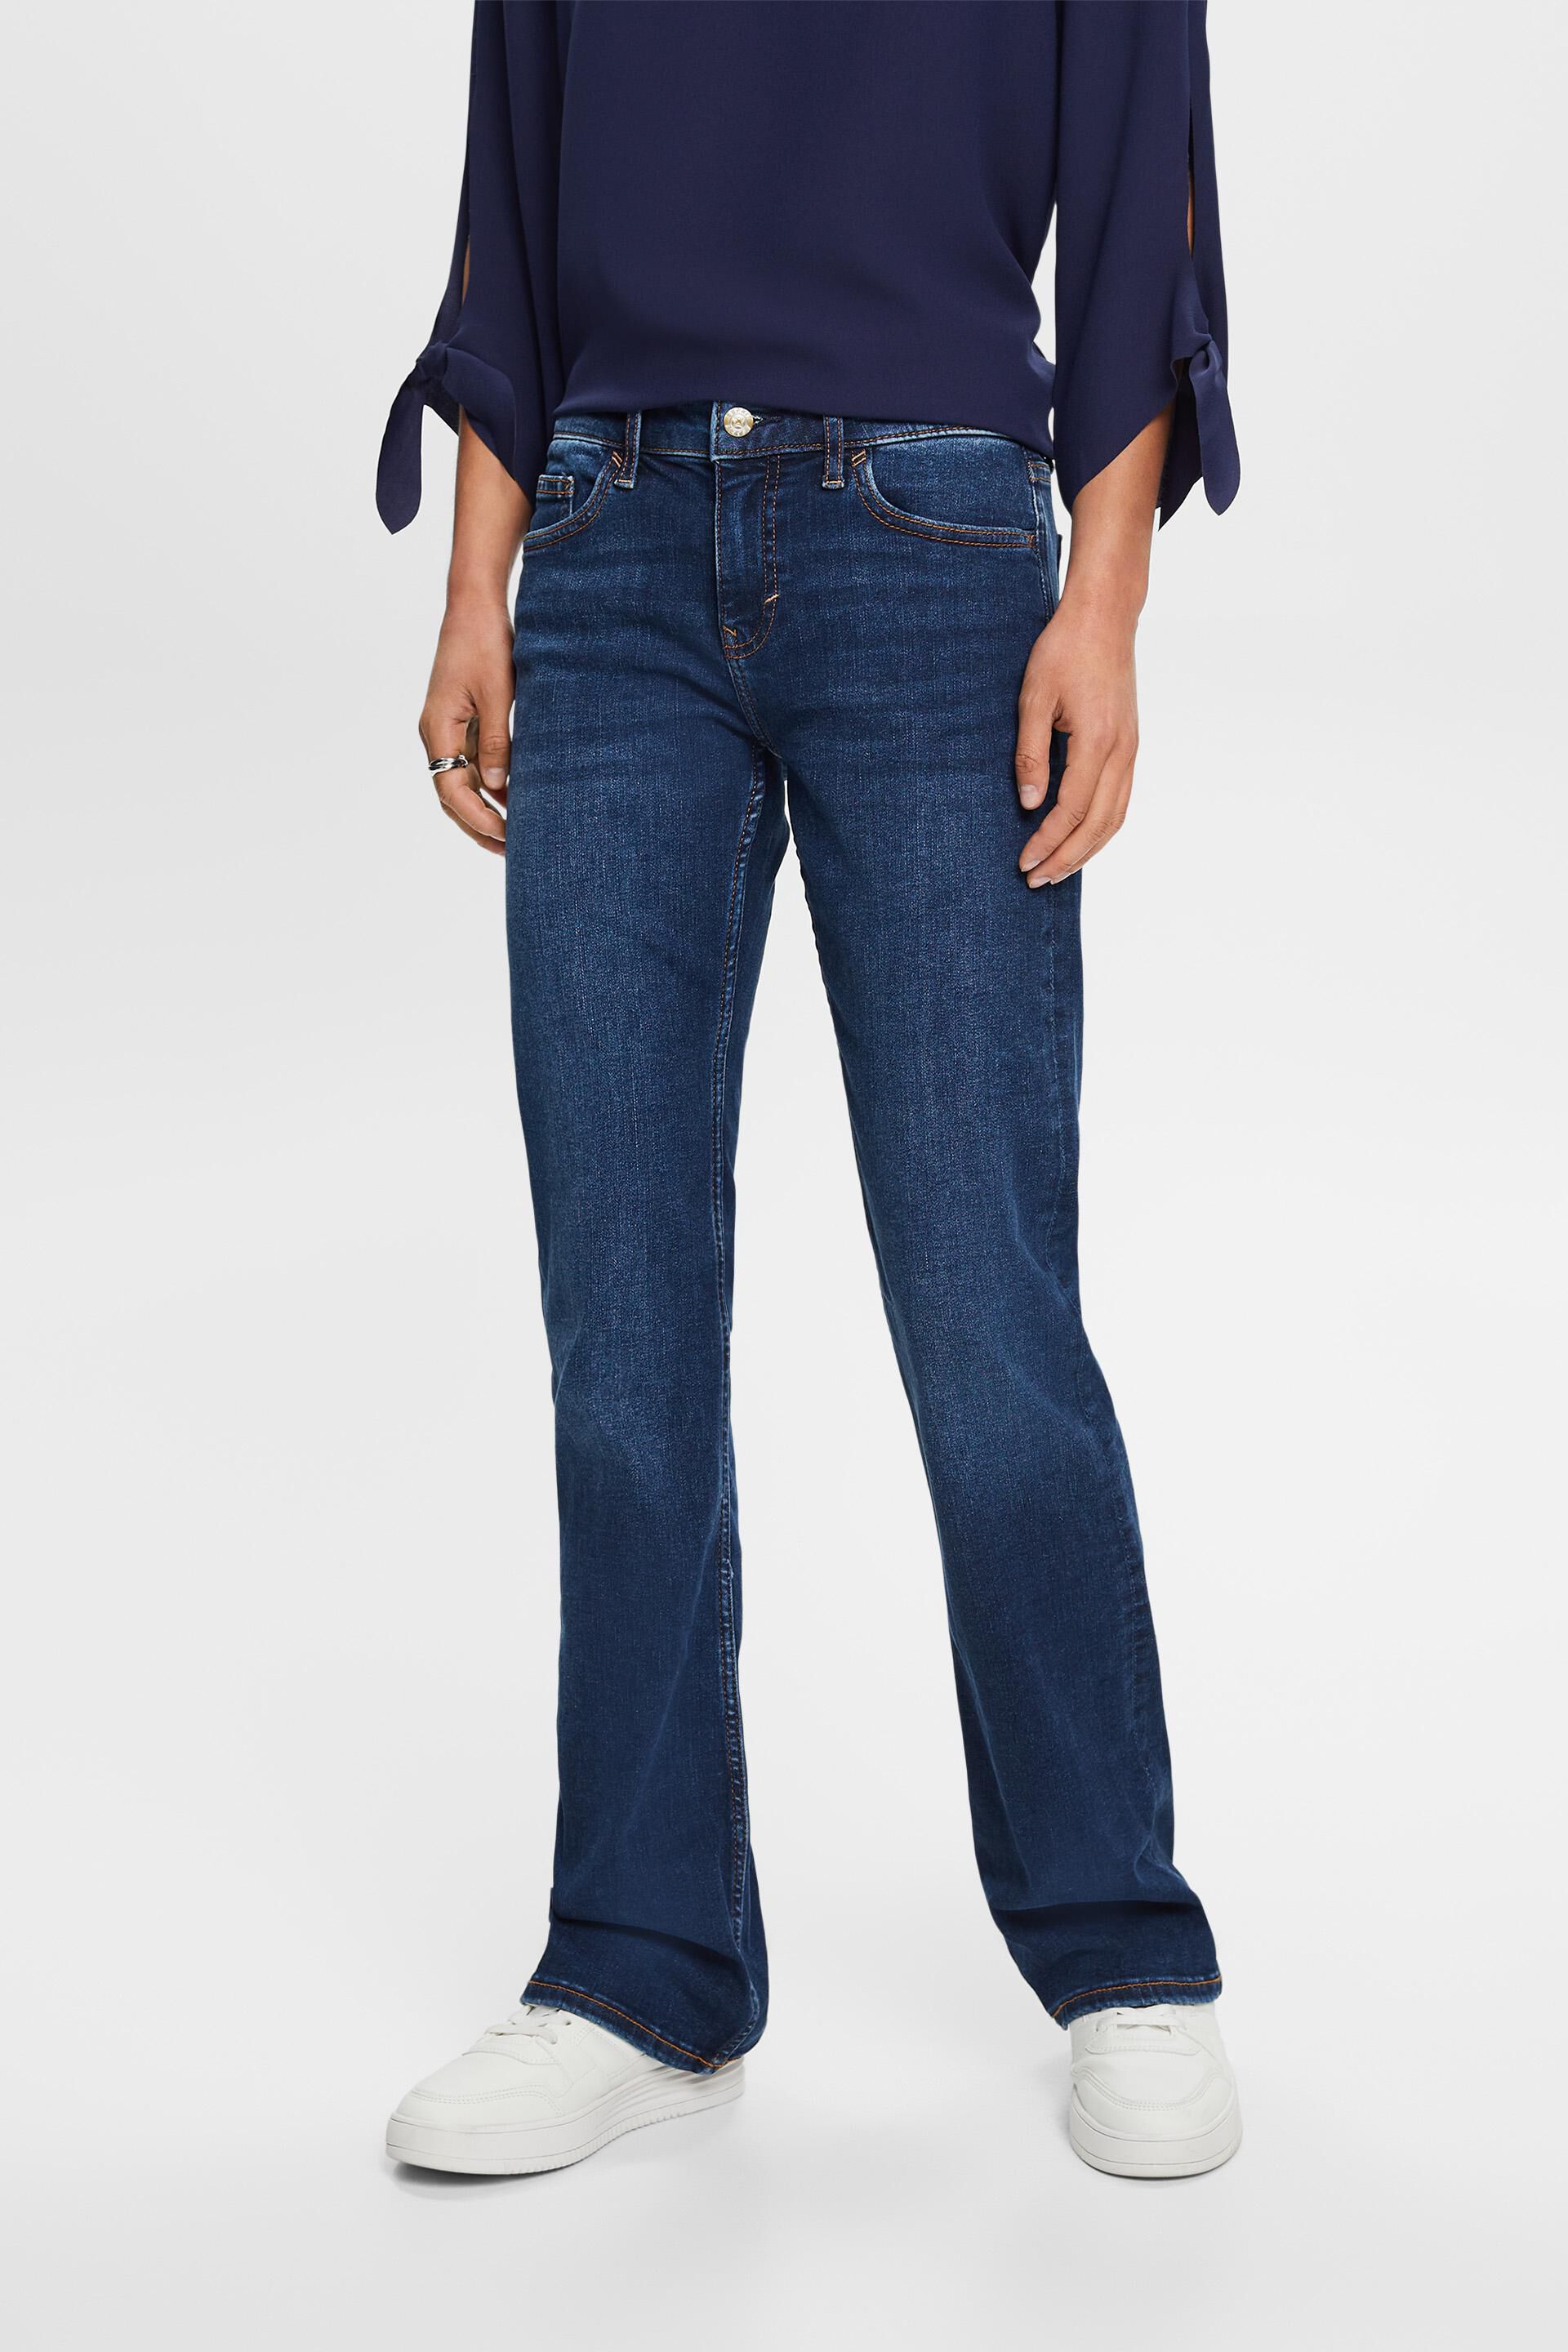 Esprit Damen Mid-rise bootcut jeans